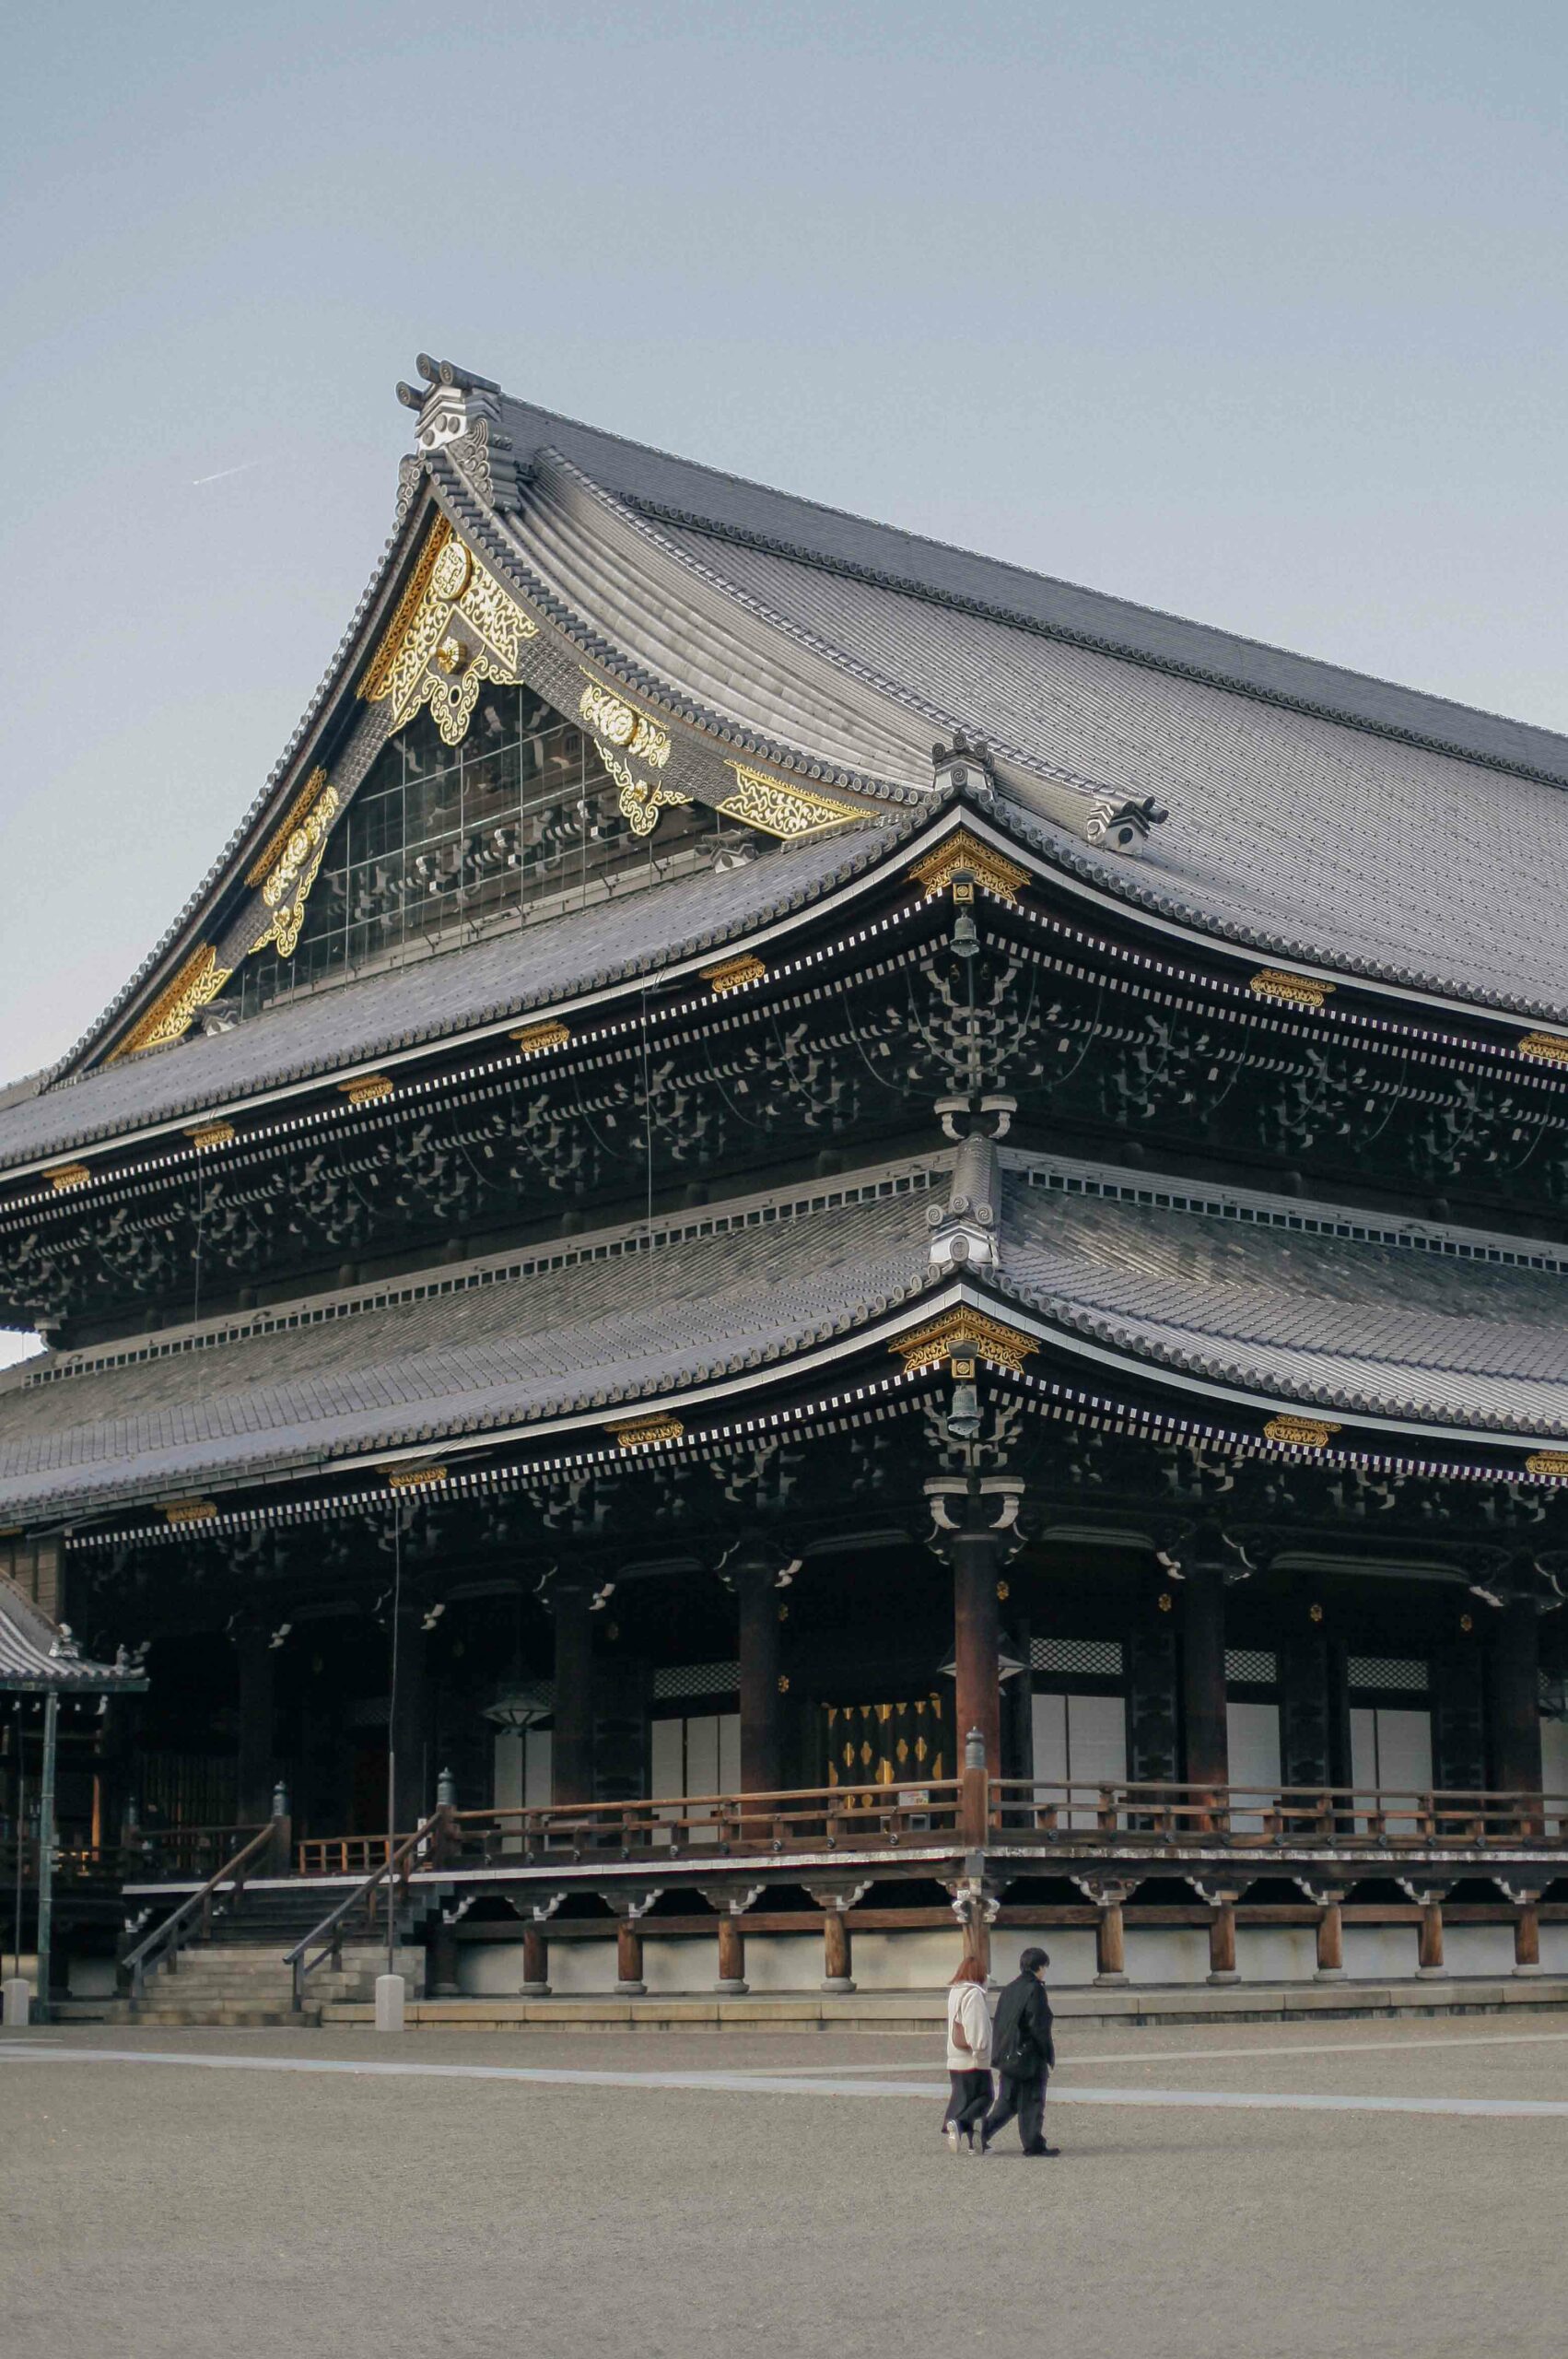 A view of Higashi Hongan-ji's enormous scale.